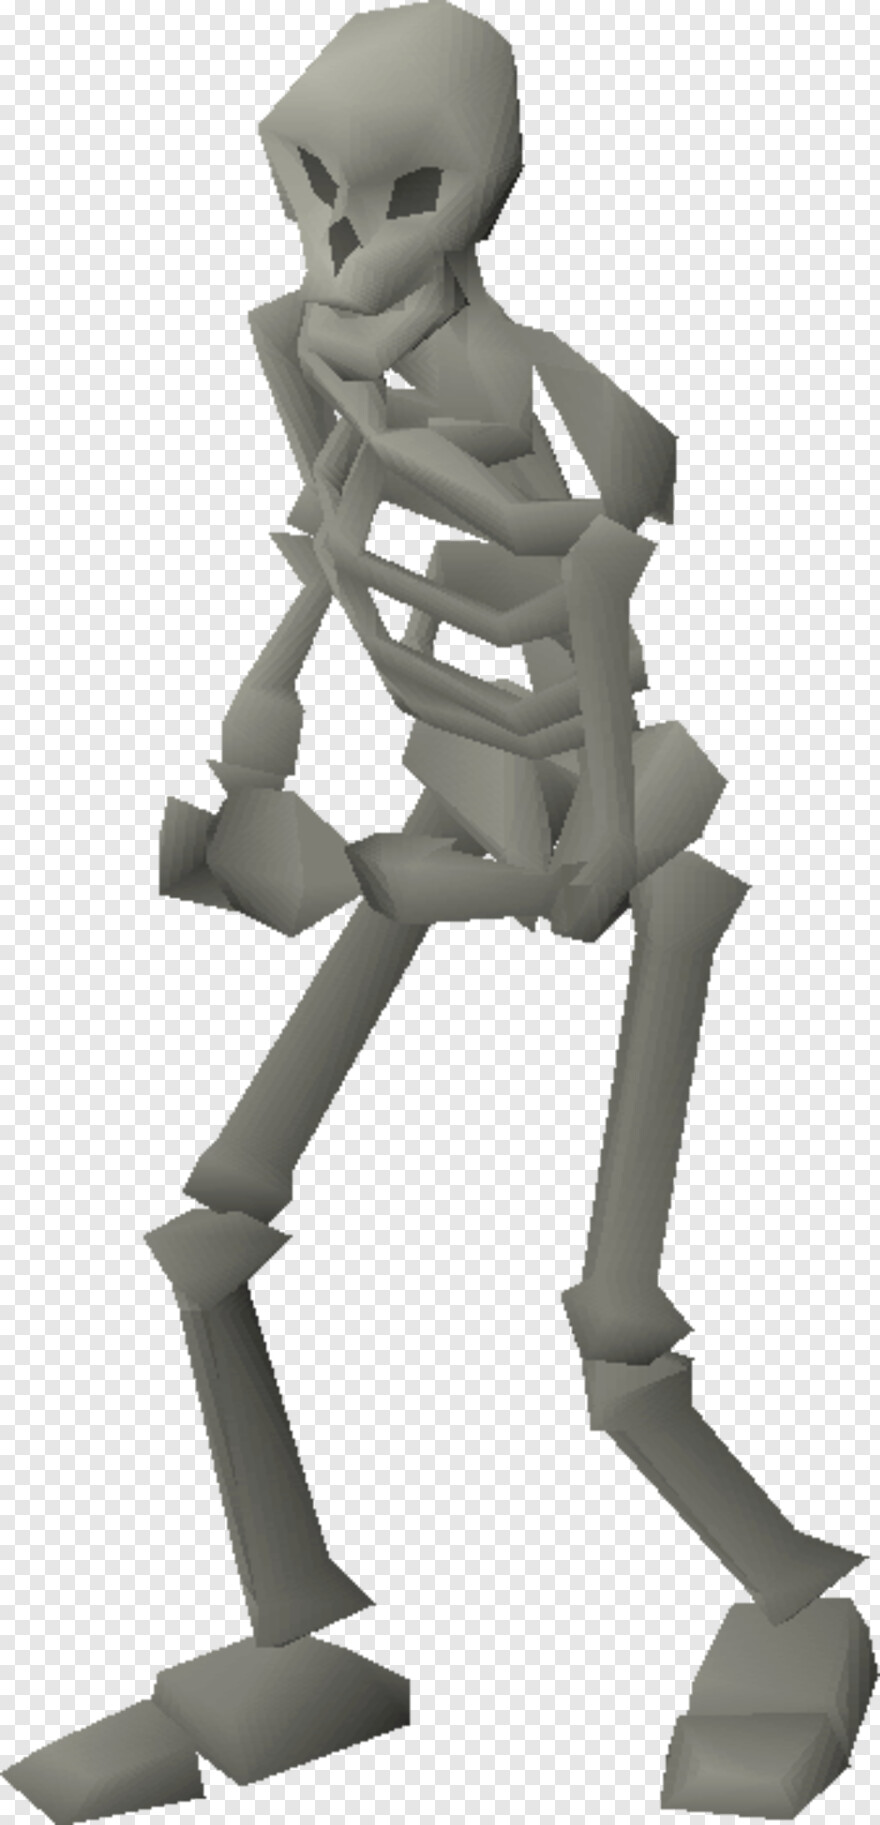  Skeleton Hand, Skeleton Head, Skeleton Key, Skeleton, Skeleton Arm